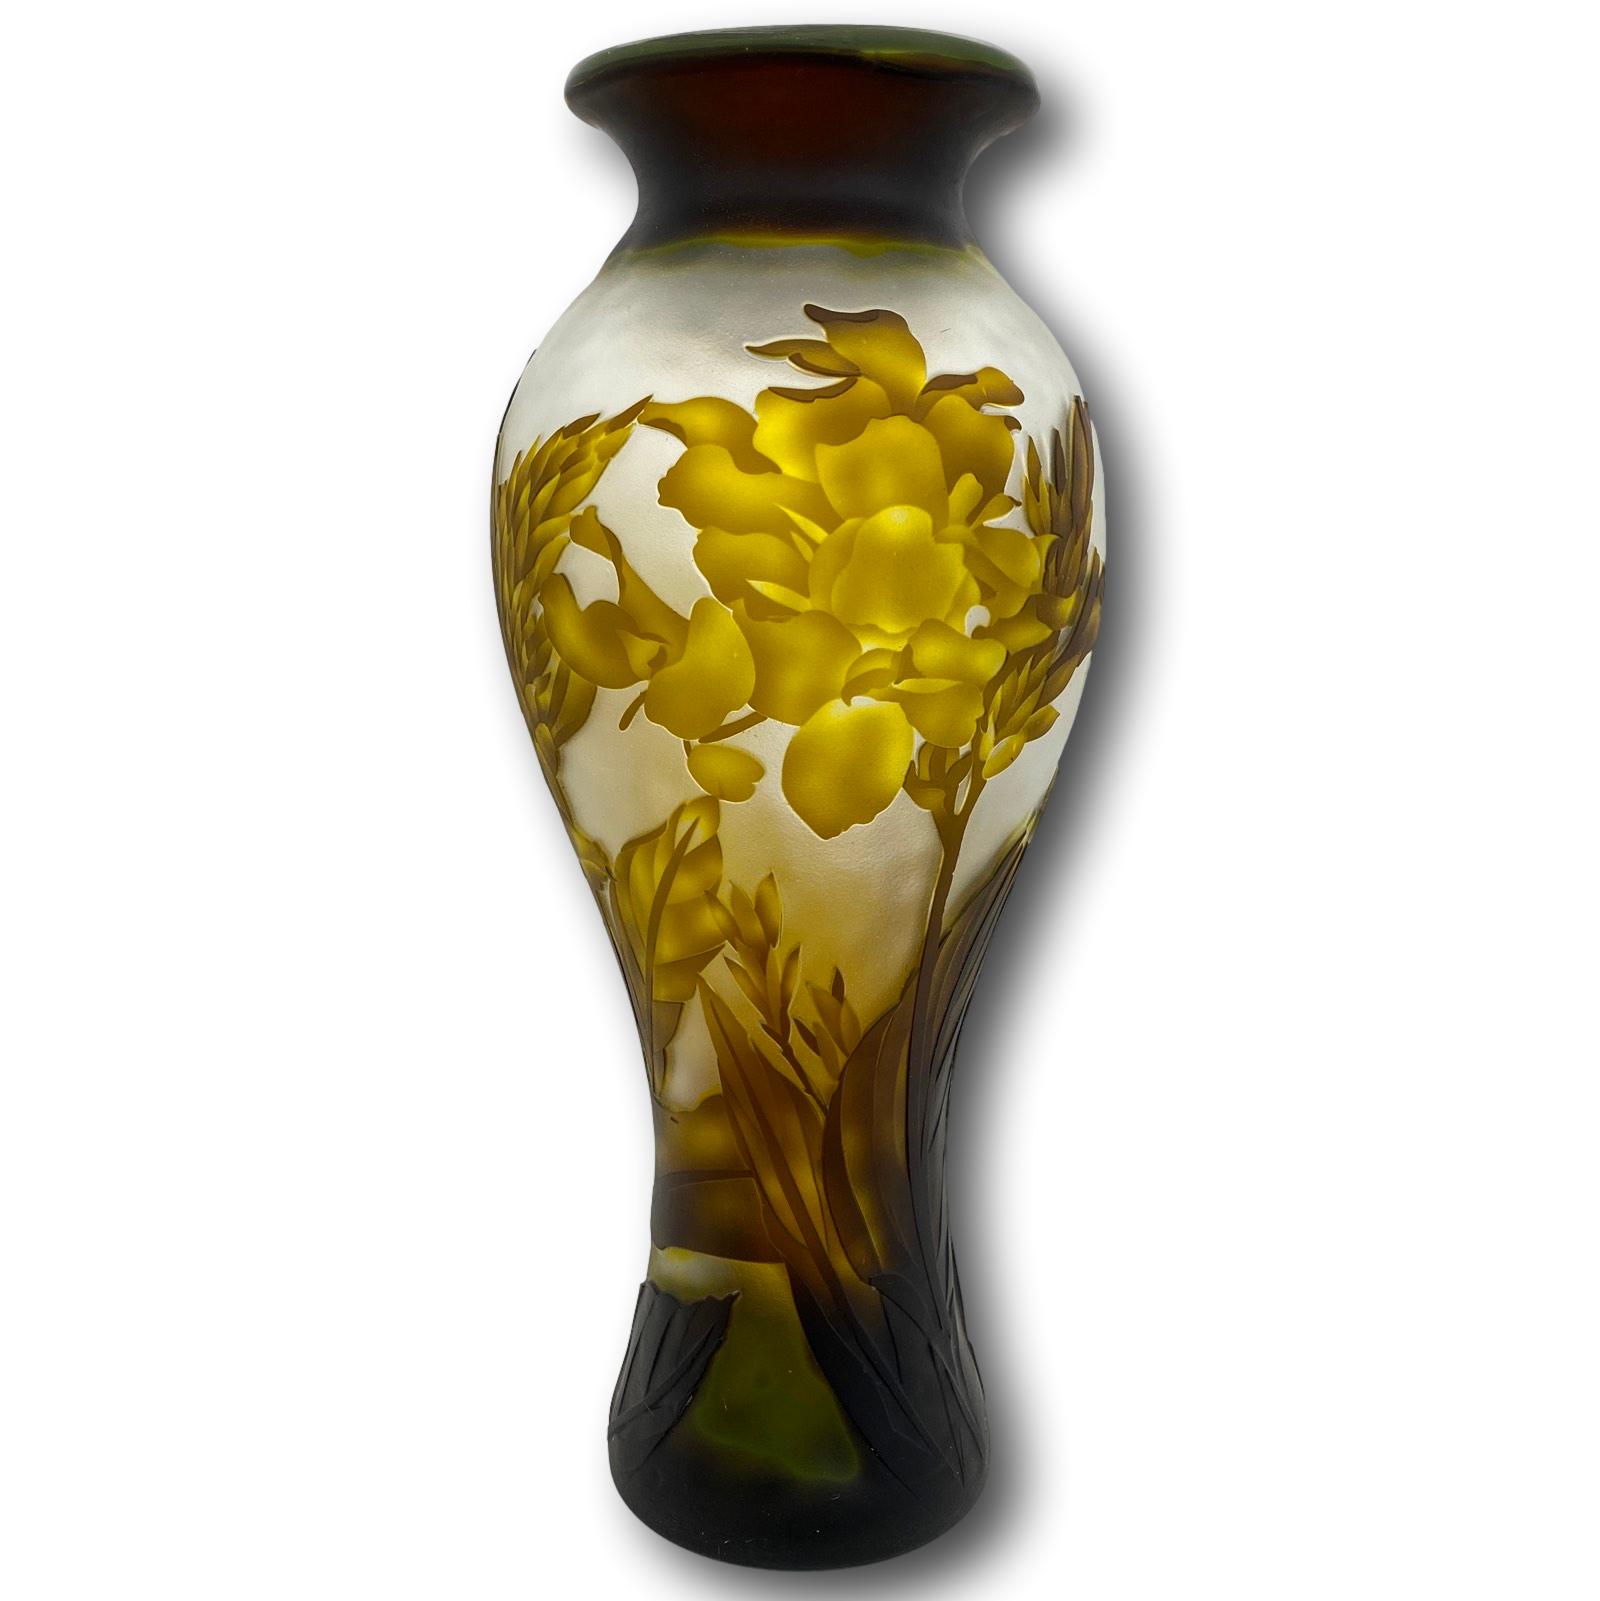 Vaasreplica naar Gallé glazen vaas glas antieke nouveau-stijl kopie c8 | Nederland